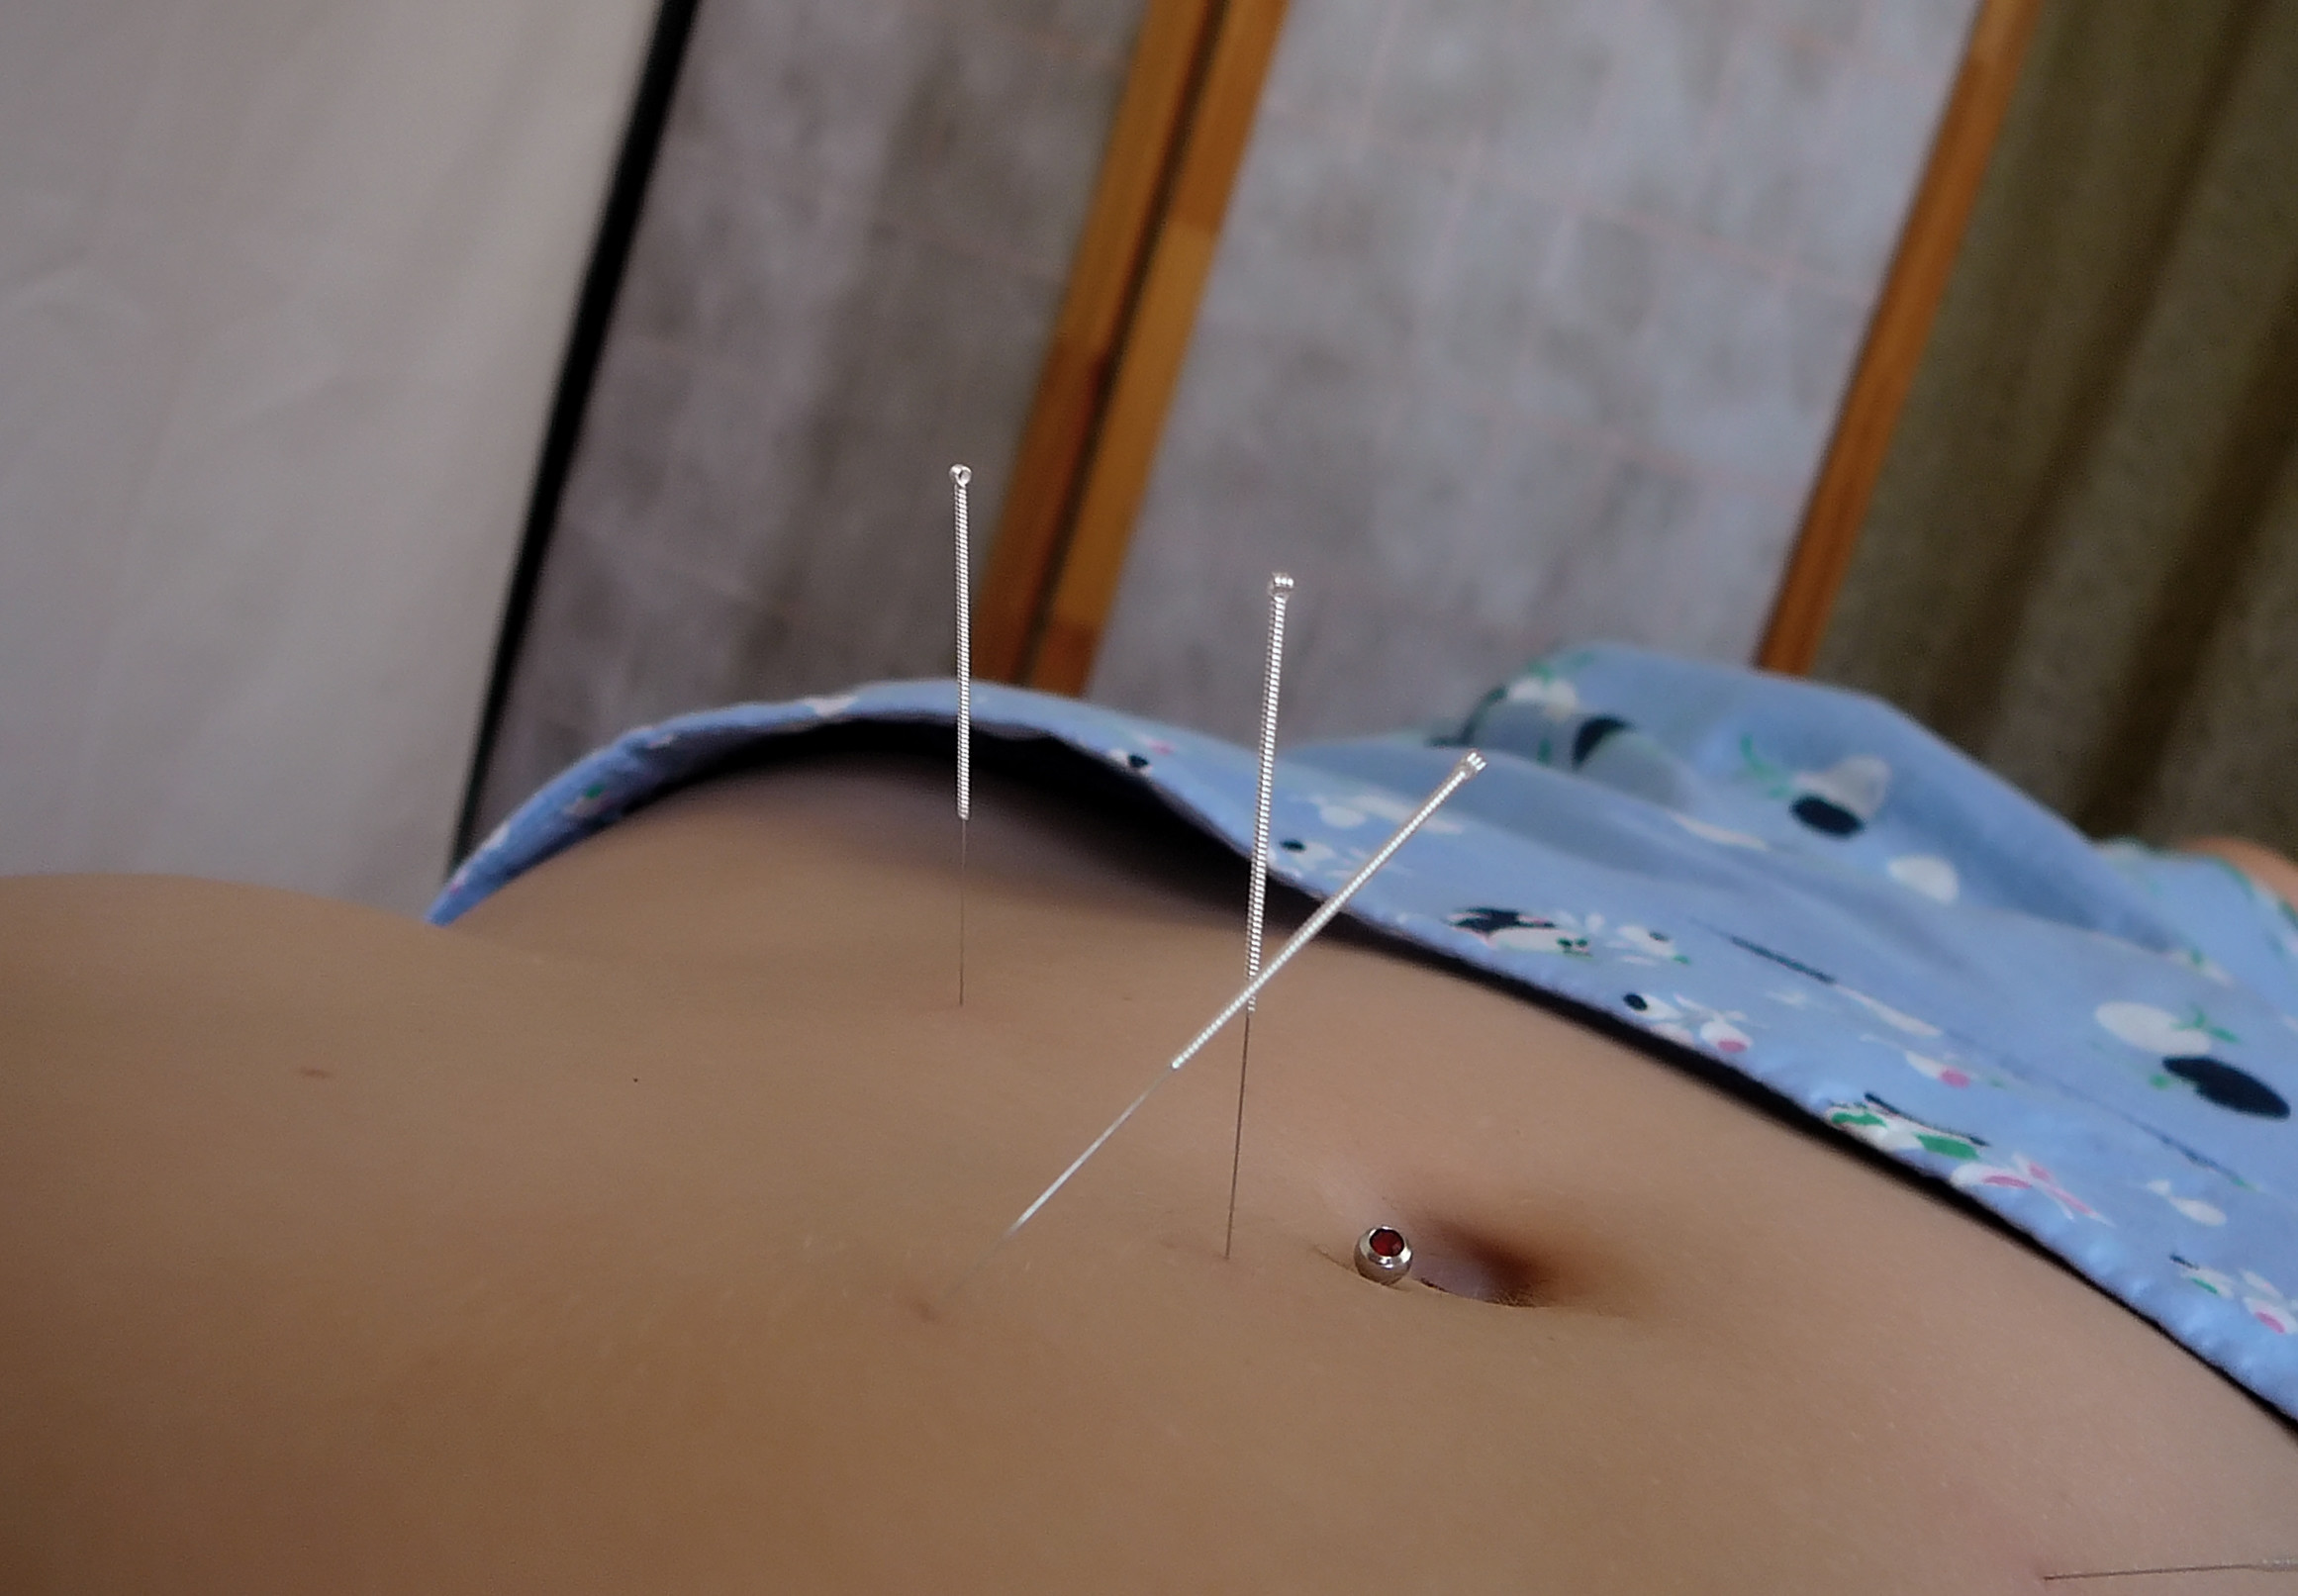 fertility acupuncture